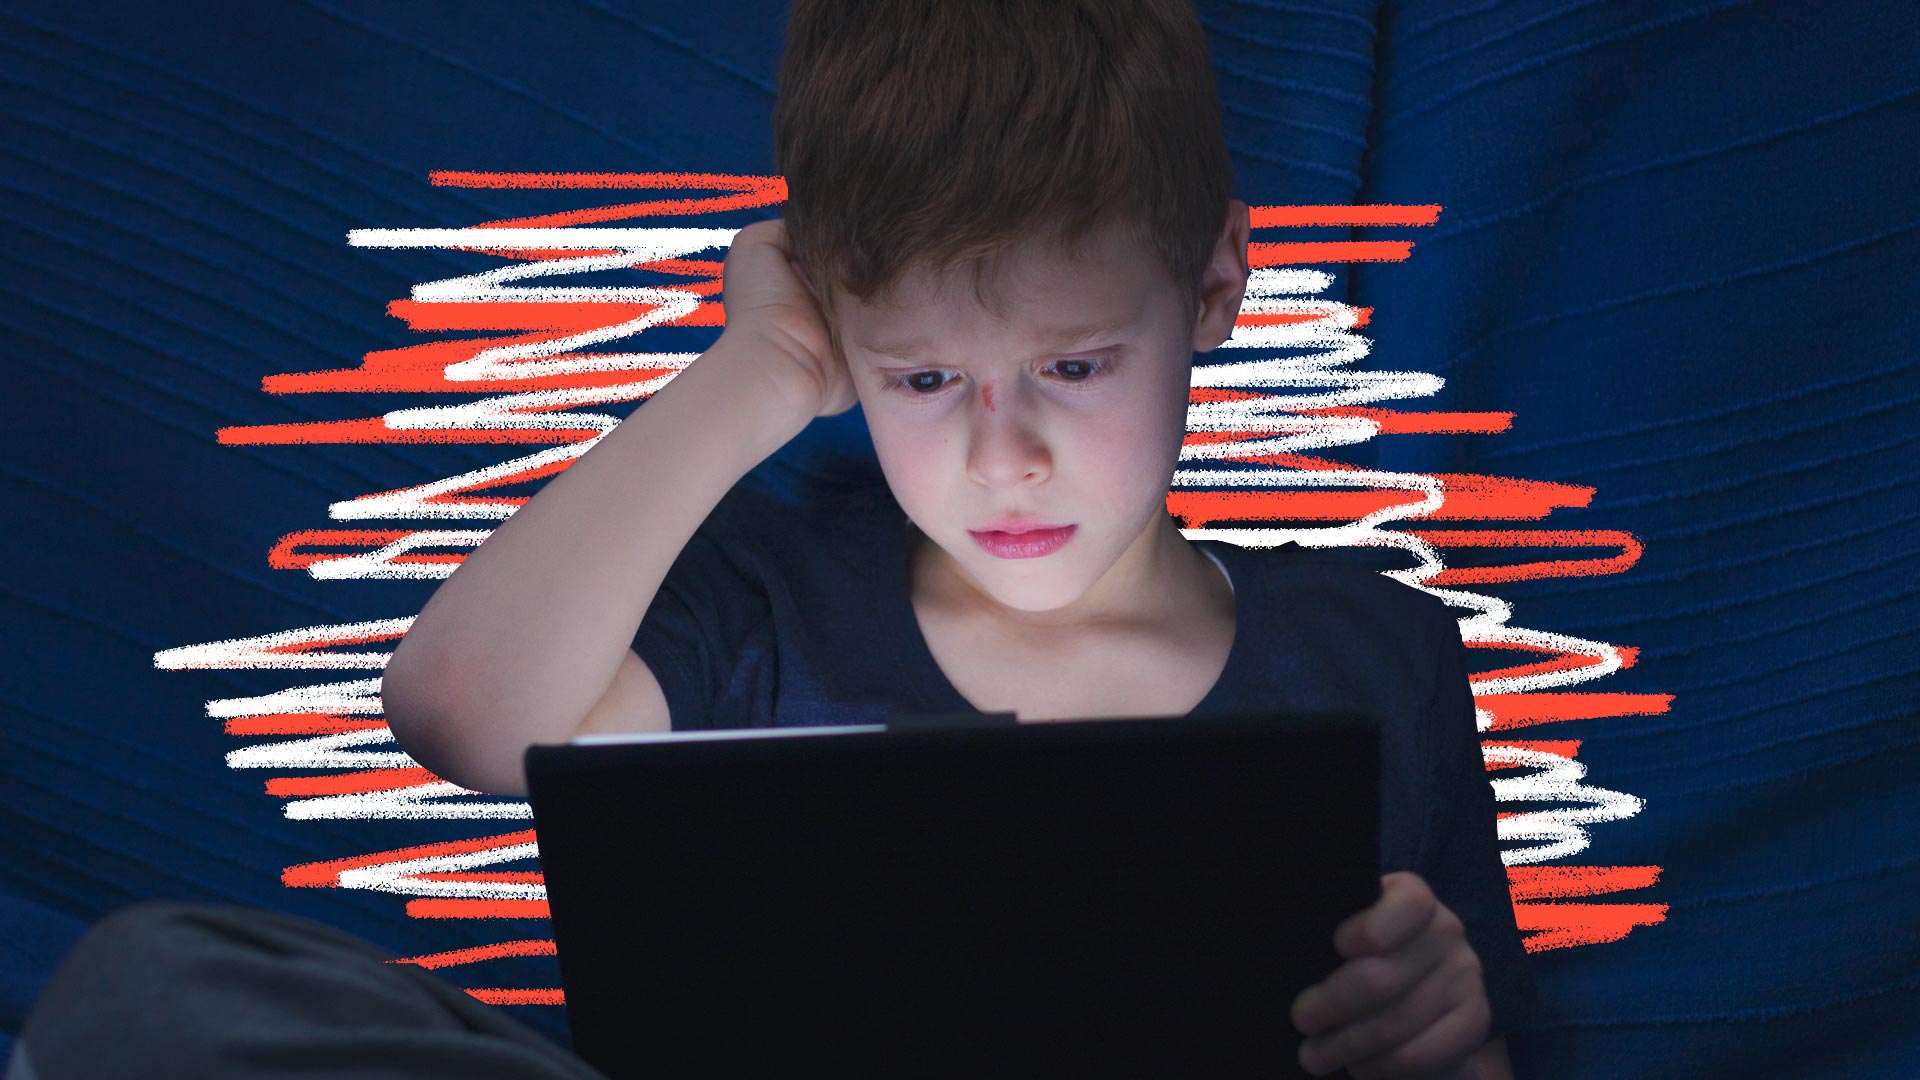 Internet e segurança: um menino branco com o nariz machucado leva a mão à orelha enquanto olha para a tela de um tablet, num cenário escuro